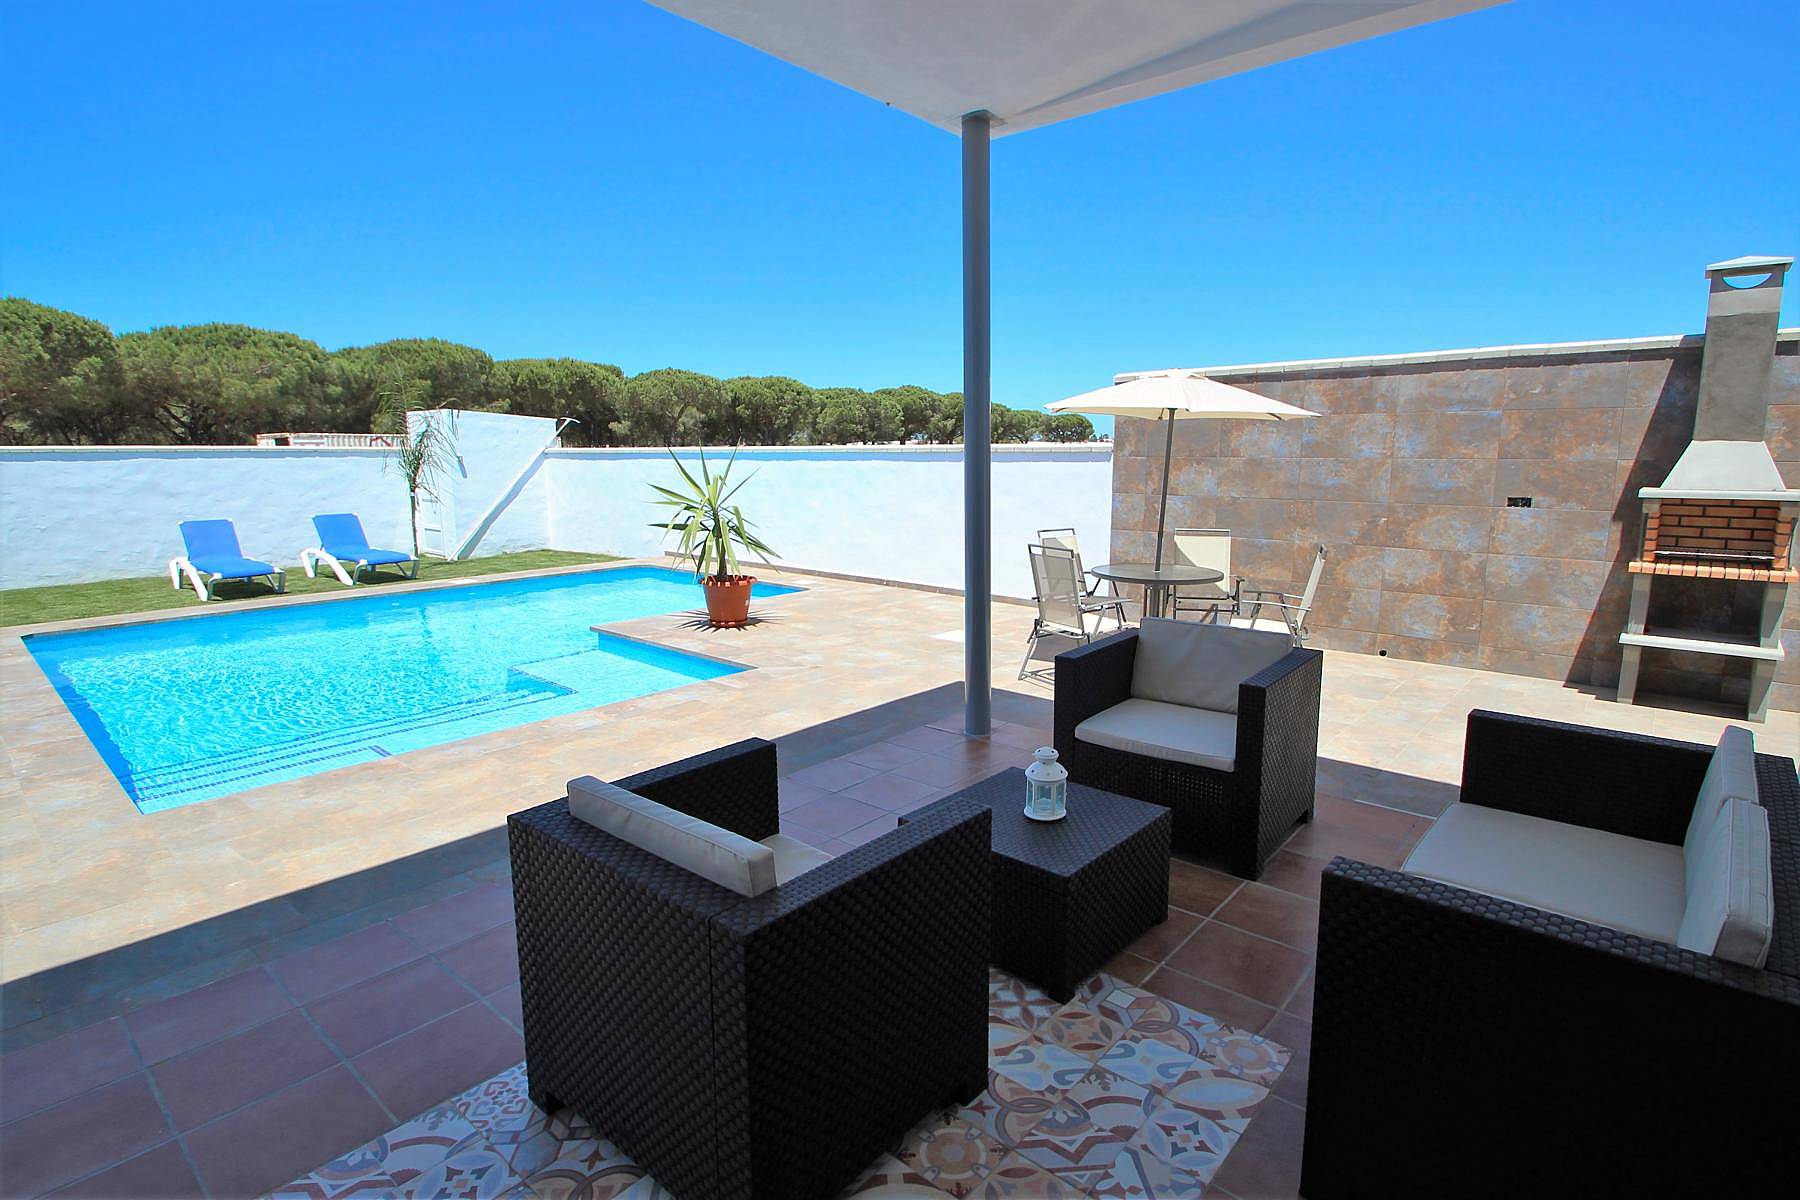 Casa nueva y moderna con piscina privada - Conil de la ...